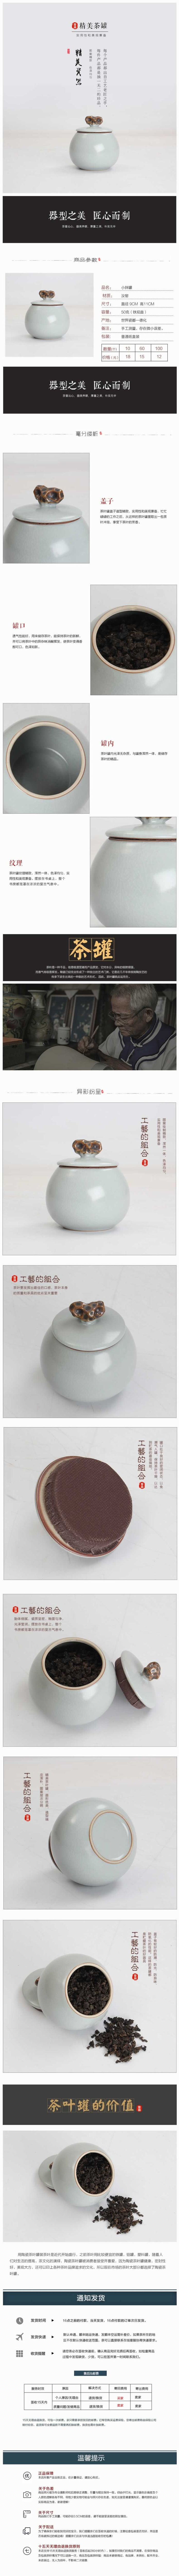 小胖罐茶叶罐陶瓷茶罐瓷器描述